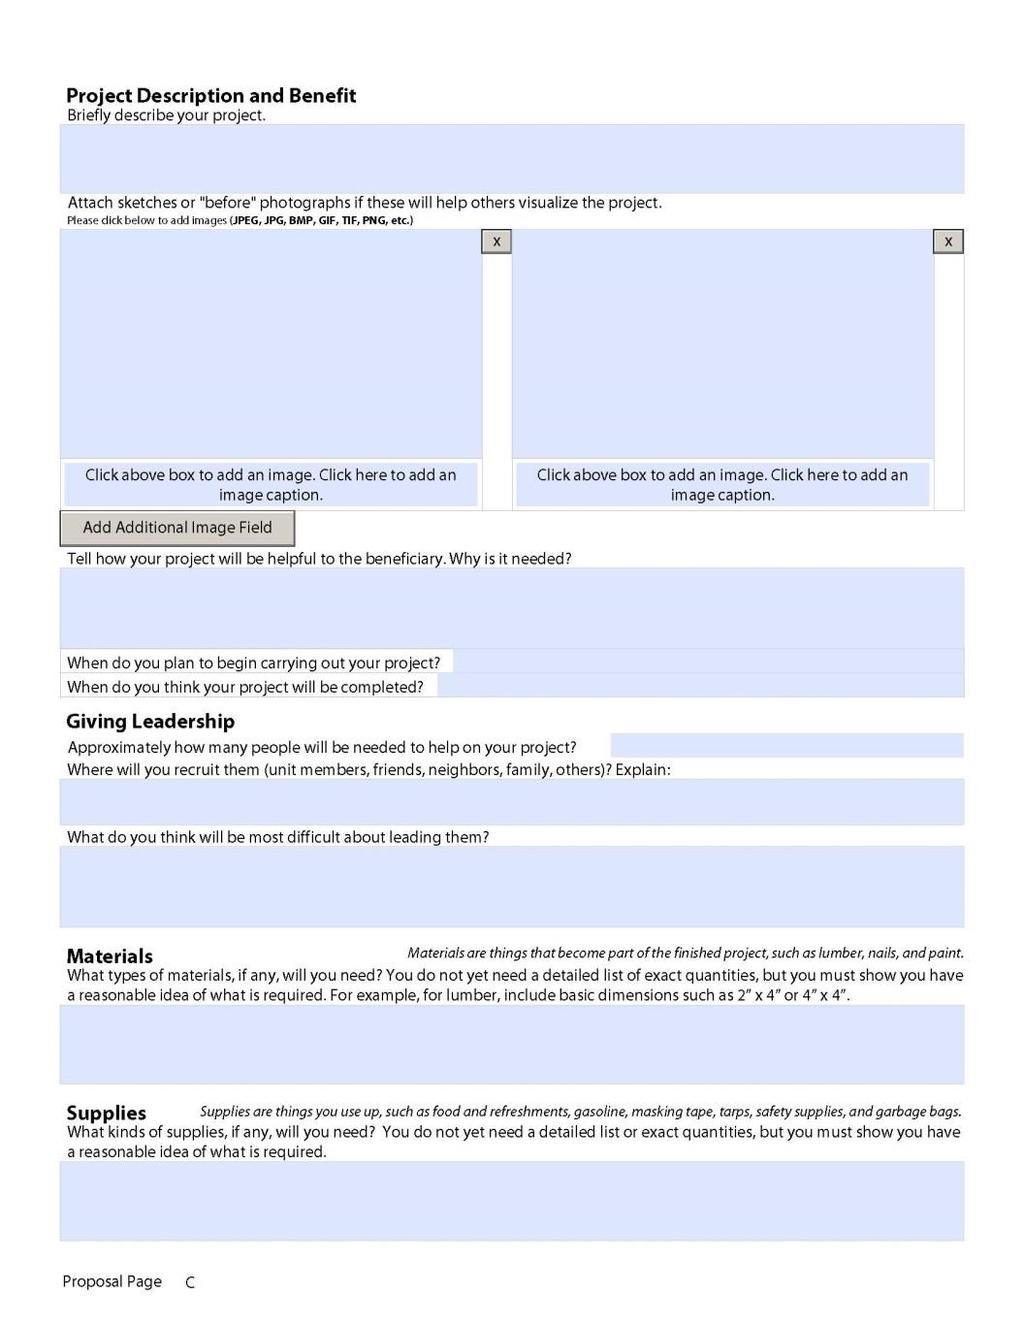 Proposal Page C Description & Benefit Pictures